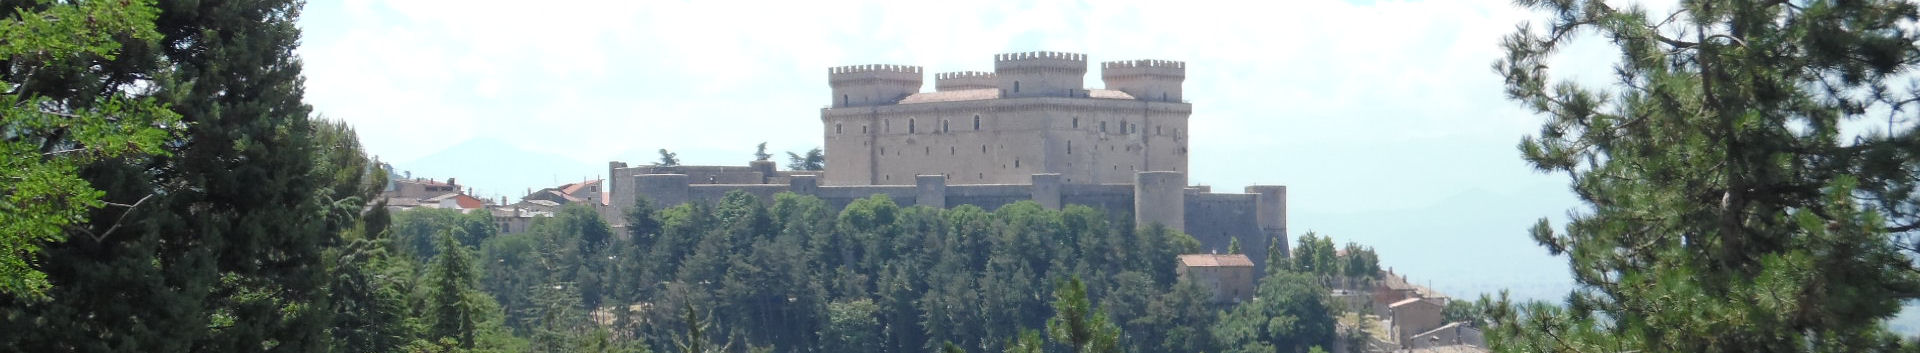 Celano Castello Piccolomini (AQ)